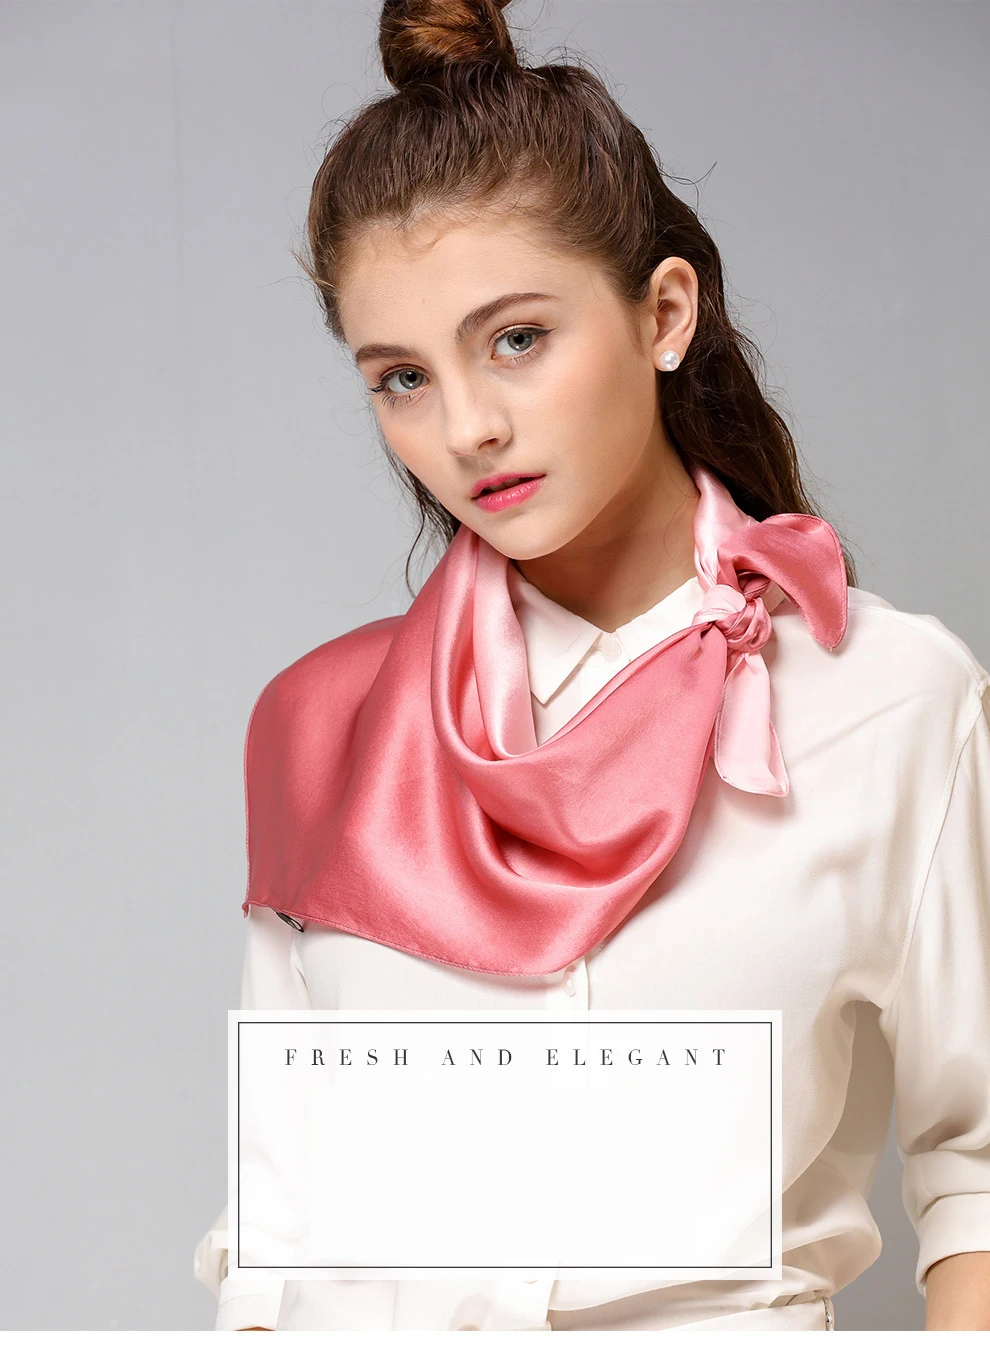 Dankeyisi чистый Шелковый шарф Для женщин Шарфы для женщин маленькие платки Площади Бандана Элитный бренд платок, шарф женский платок Прямая